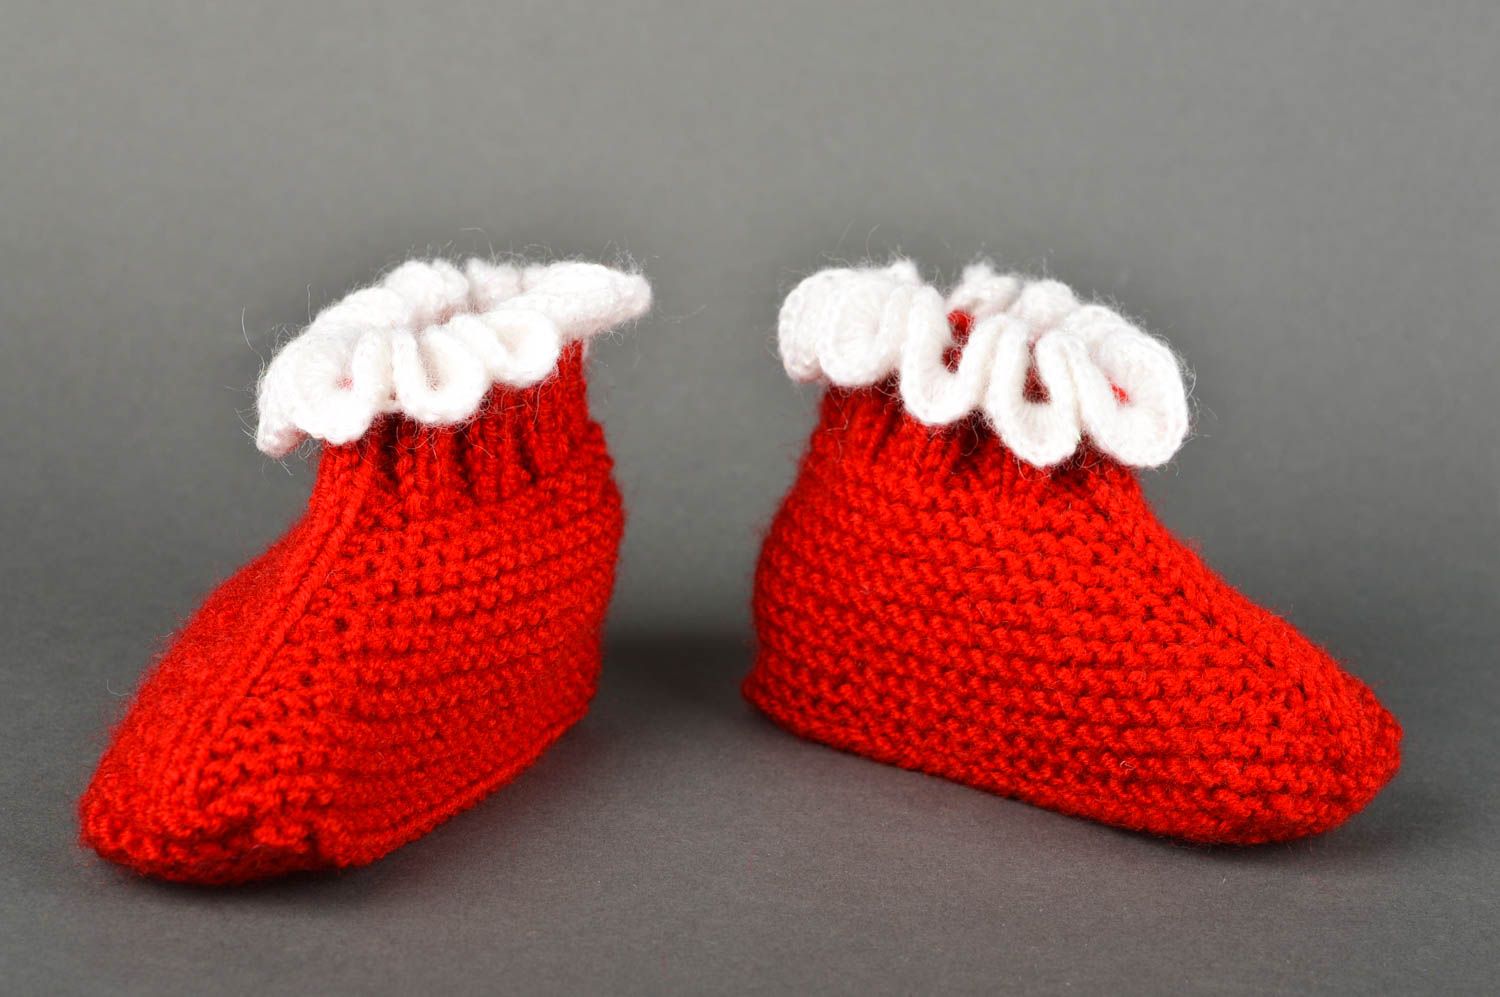 Chaussons de bébé faits main Chaussures bébé rouges tricotés Vêtement bébé photo 2